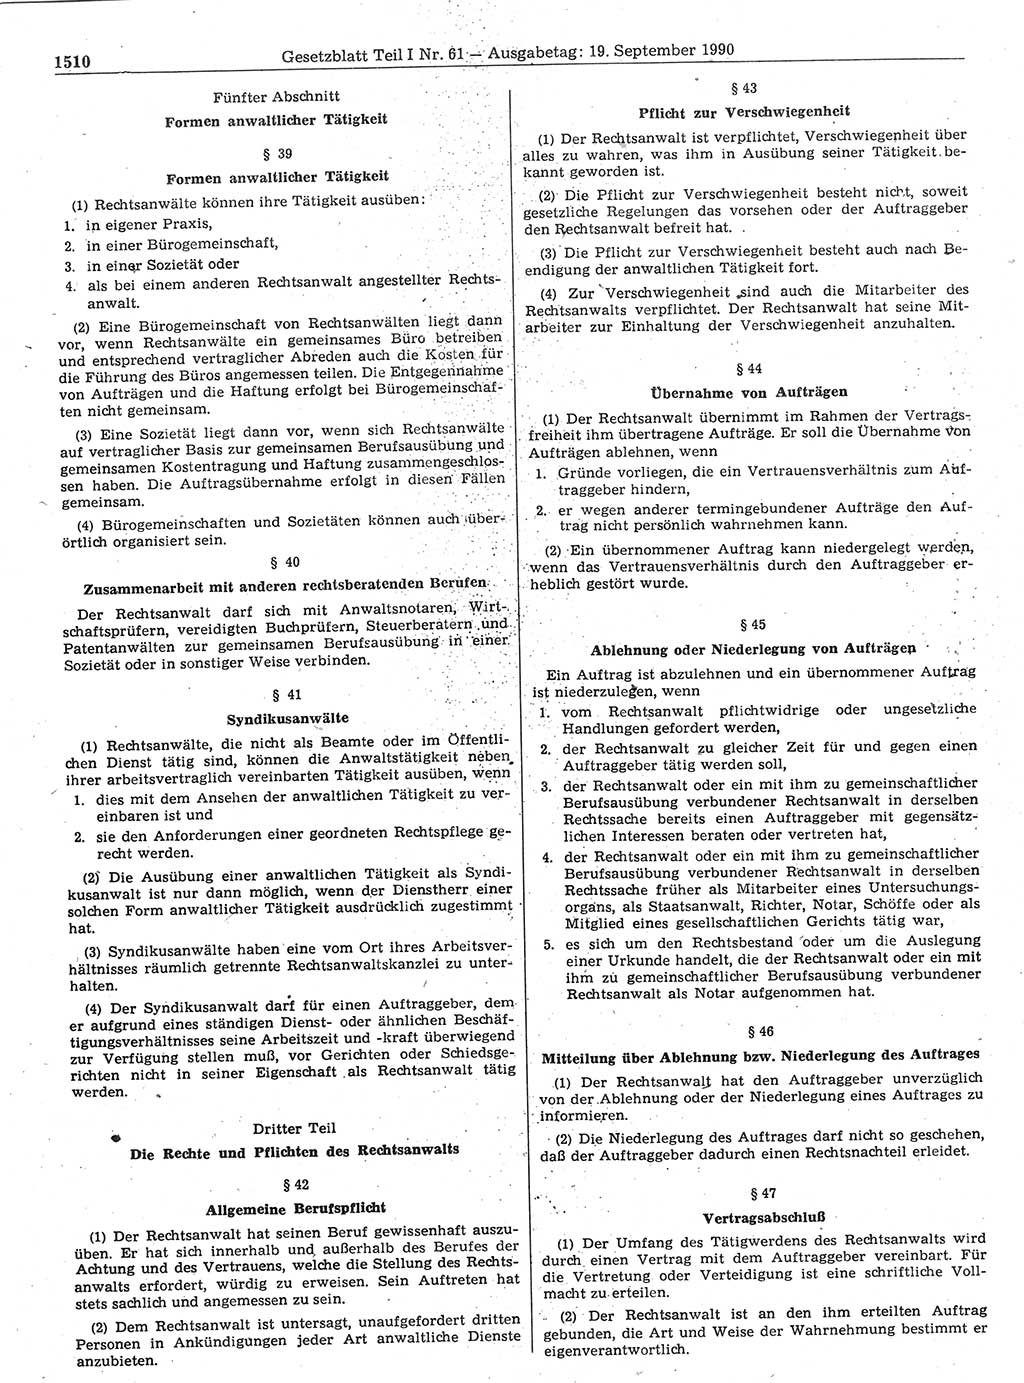 Gesetzblatt (GBl.) der Deutschen Demokratischen Republik (DDR) Teil Ⅰ 1990, Seite 1510 (GBl. DDR Ⅰ 1990, S. 1510)